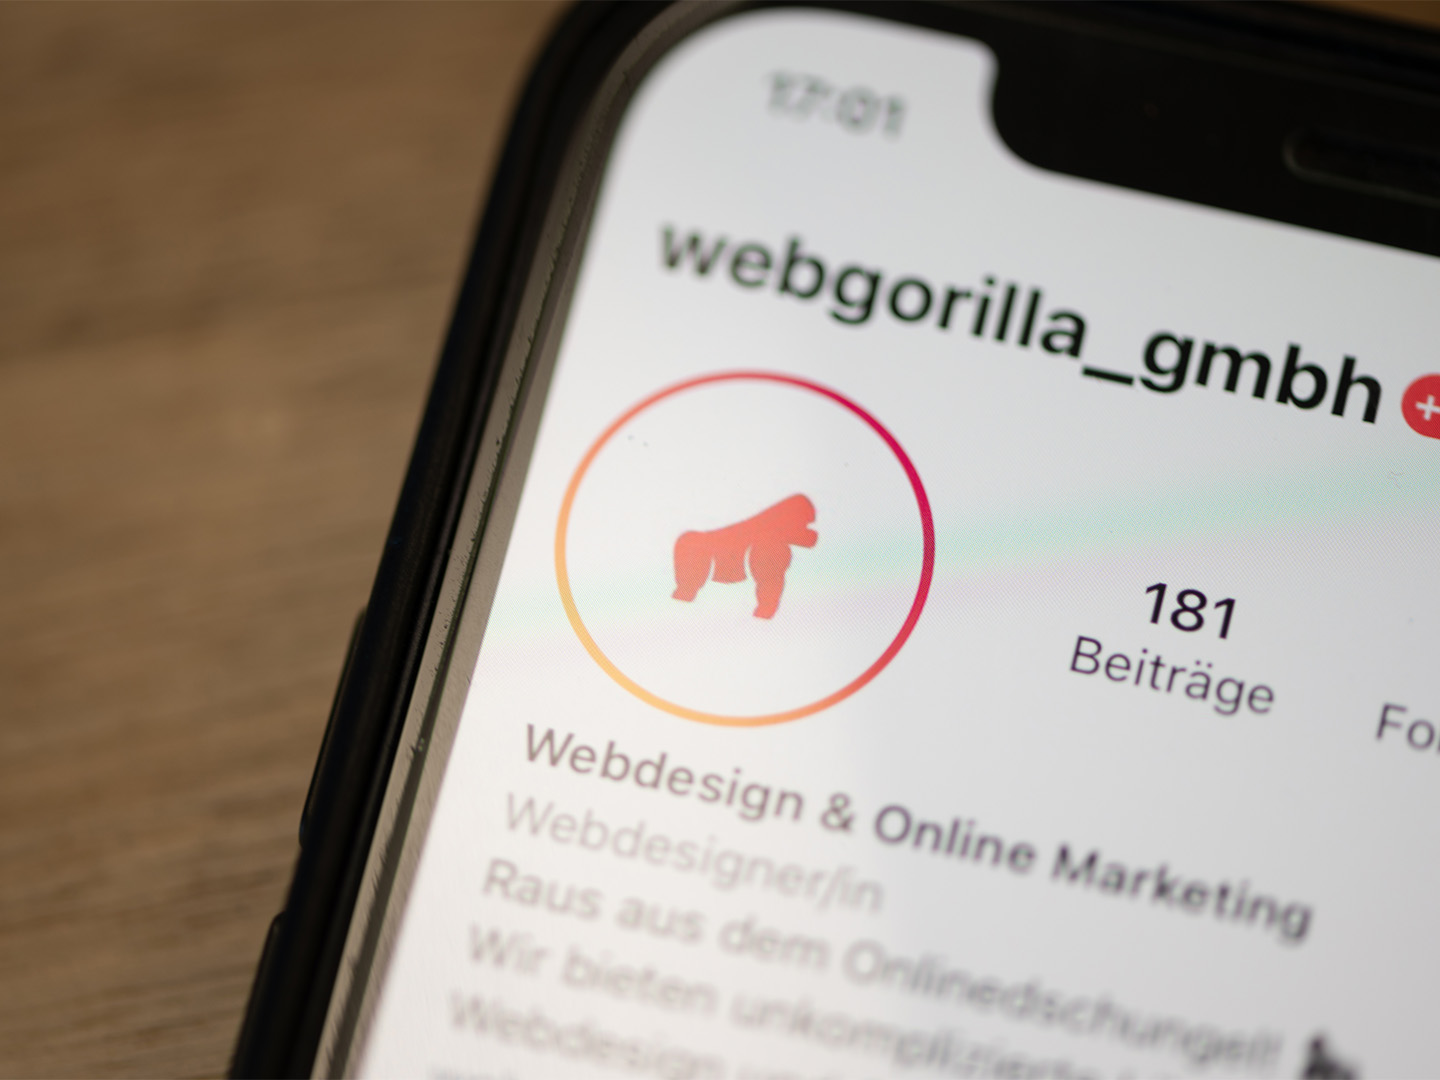 (c) Webgorilla.ch